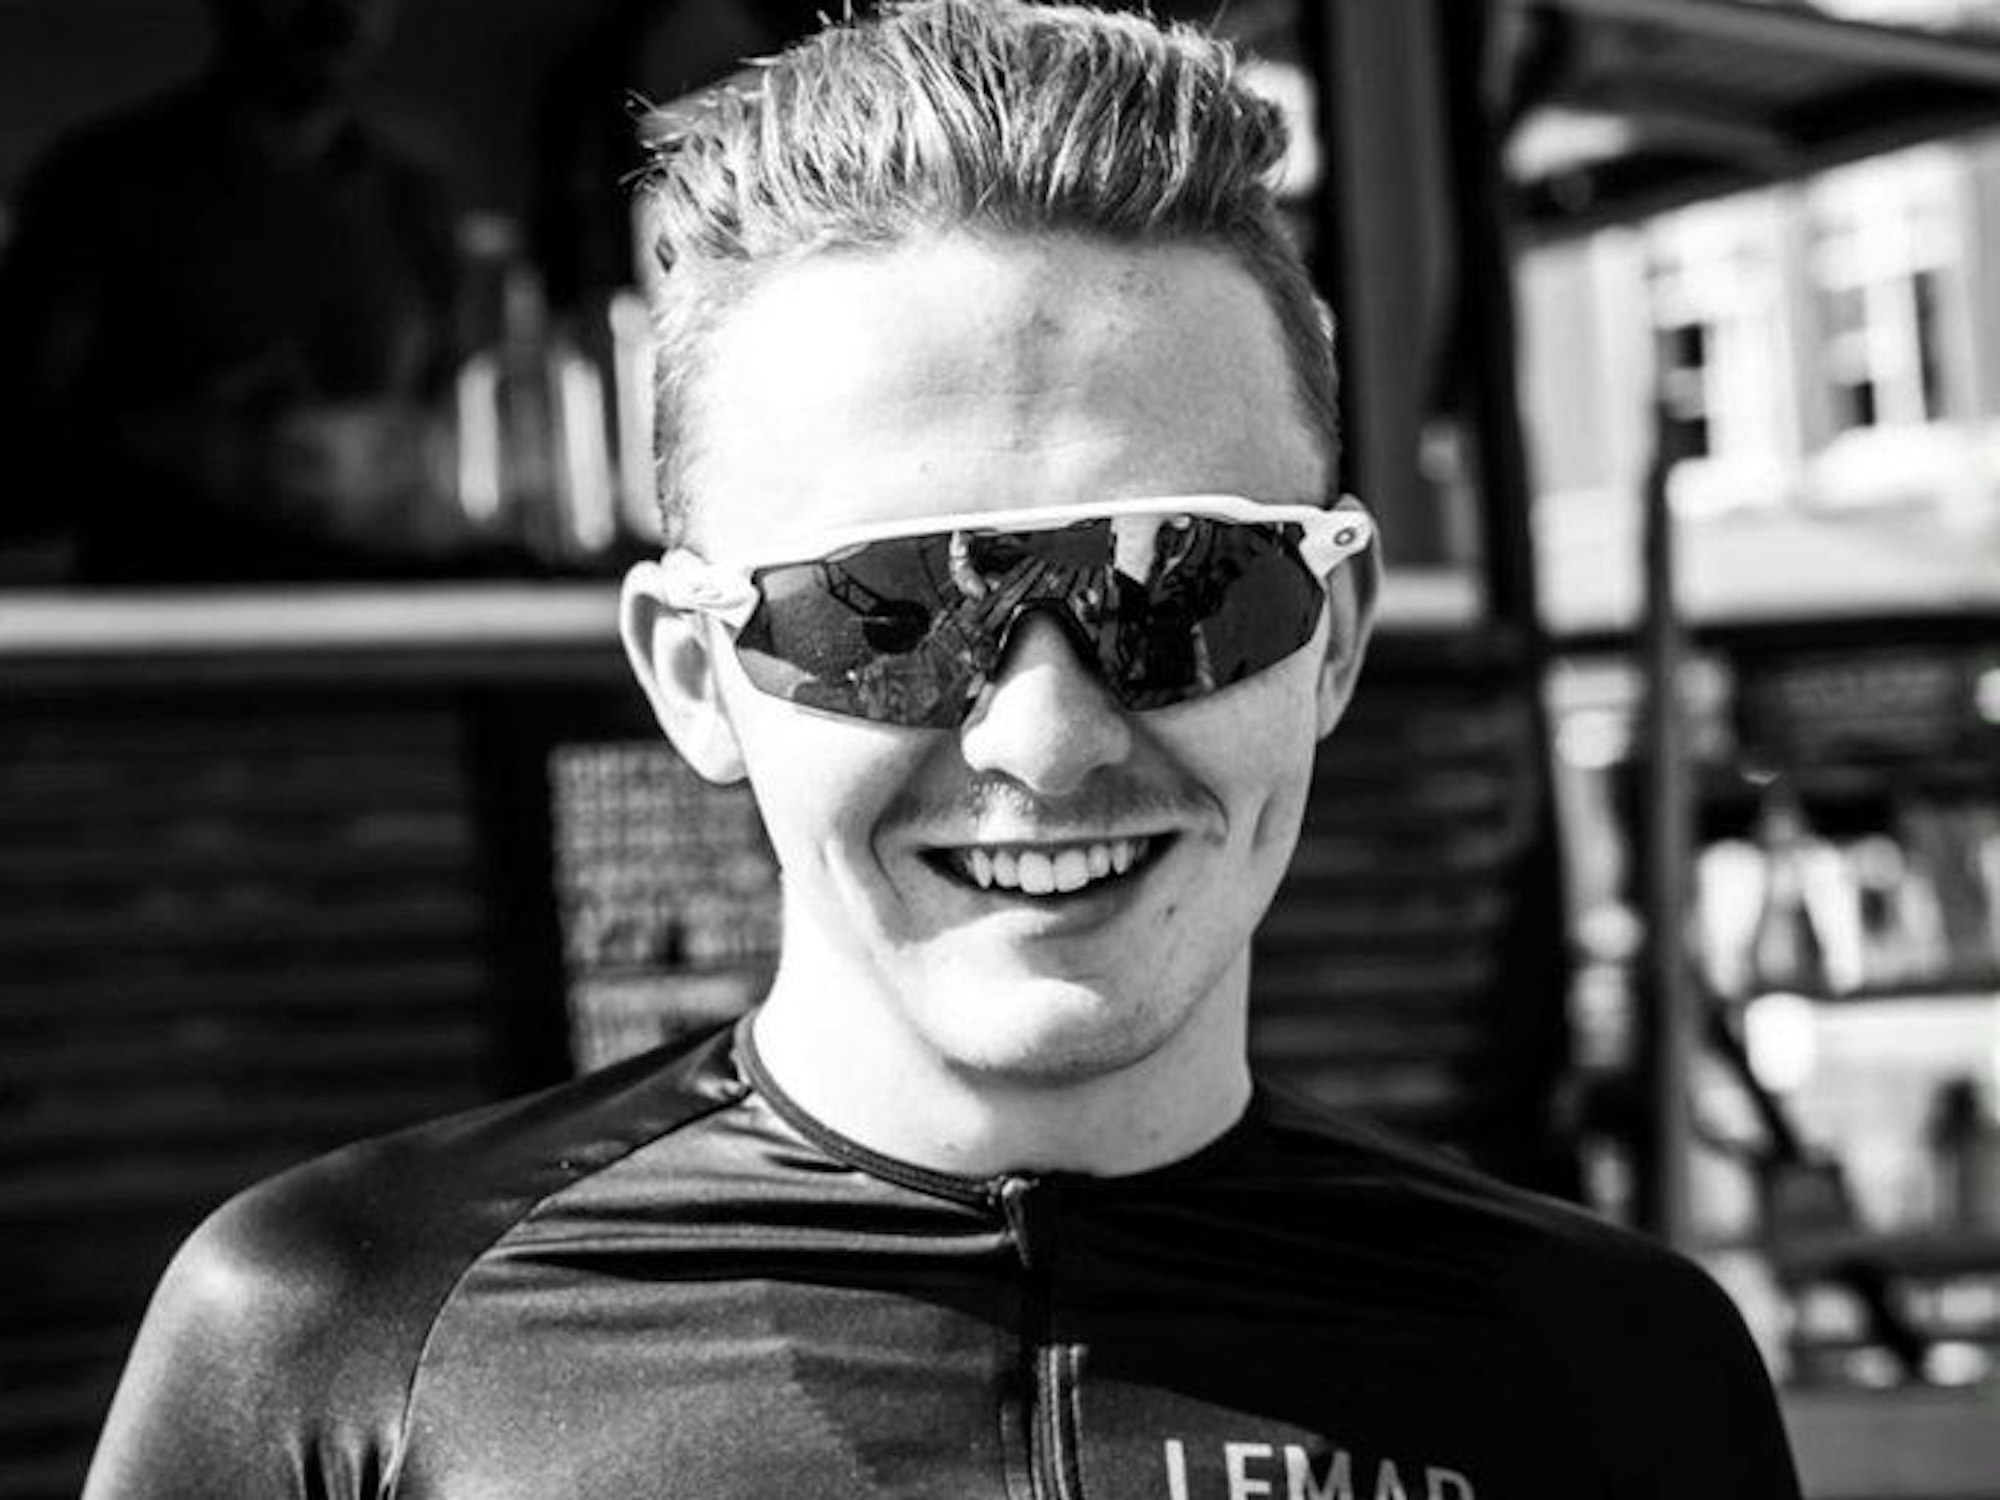 Connor Lambert lacht auf einem Schwarz-Weiß-Bild mit Sonnenbrille in die Kamera.